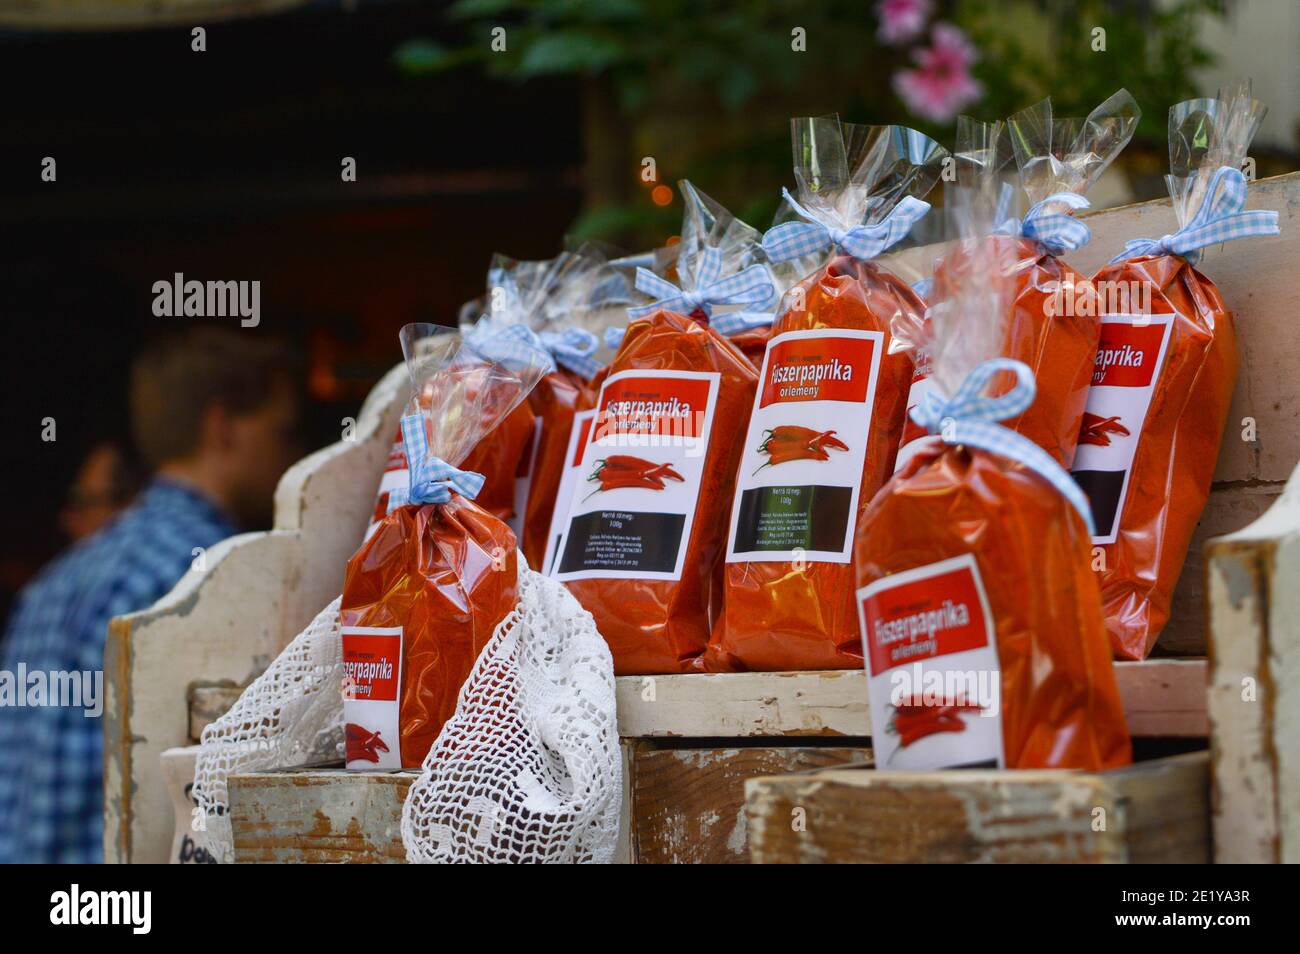 Budapest, Hongrie : poivre rouge moulu frais, poivrons paprika hongrois, souvenir du marché traditionnel, épices nationales hongroises Banque D'Images